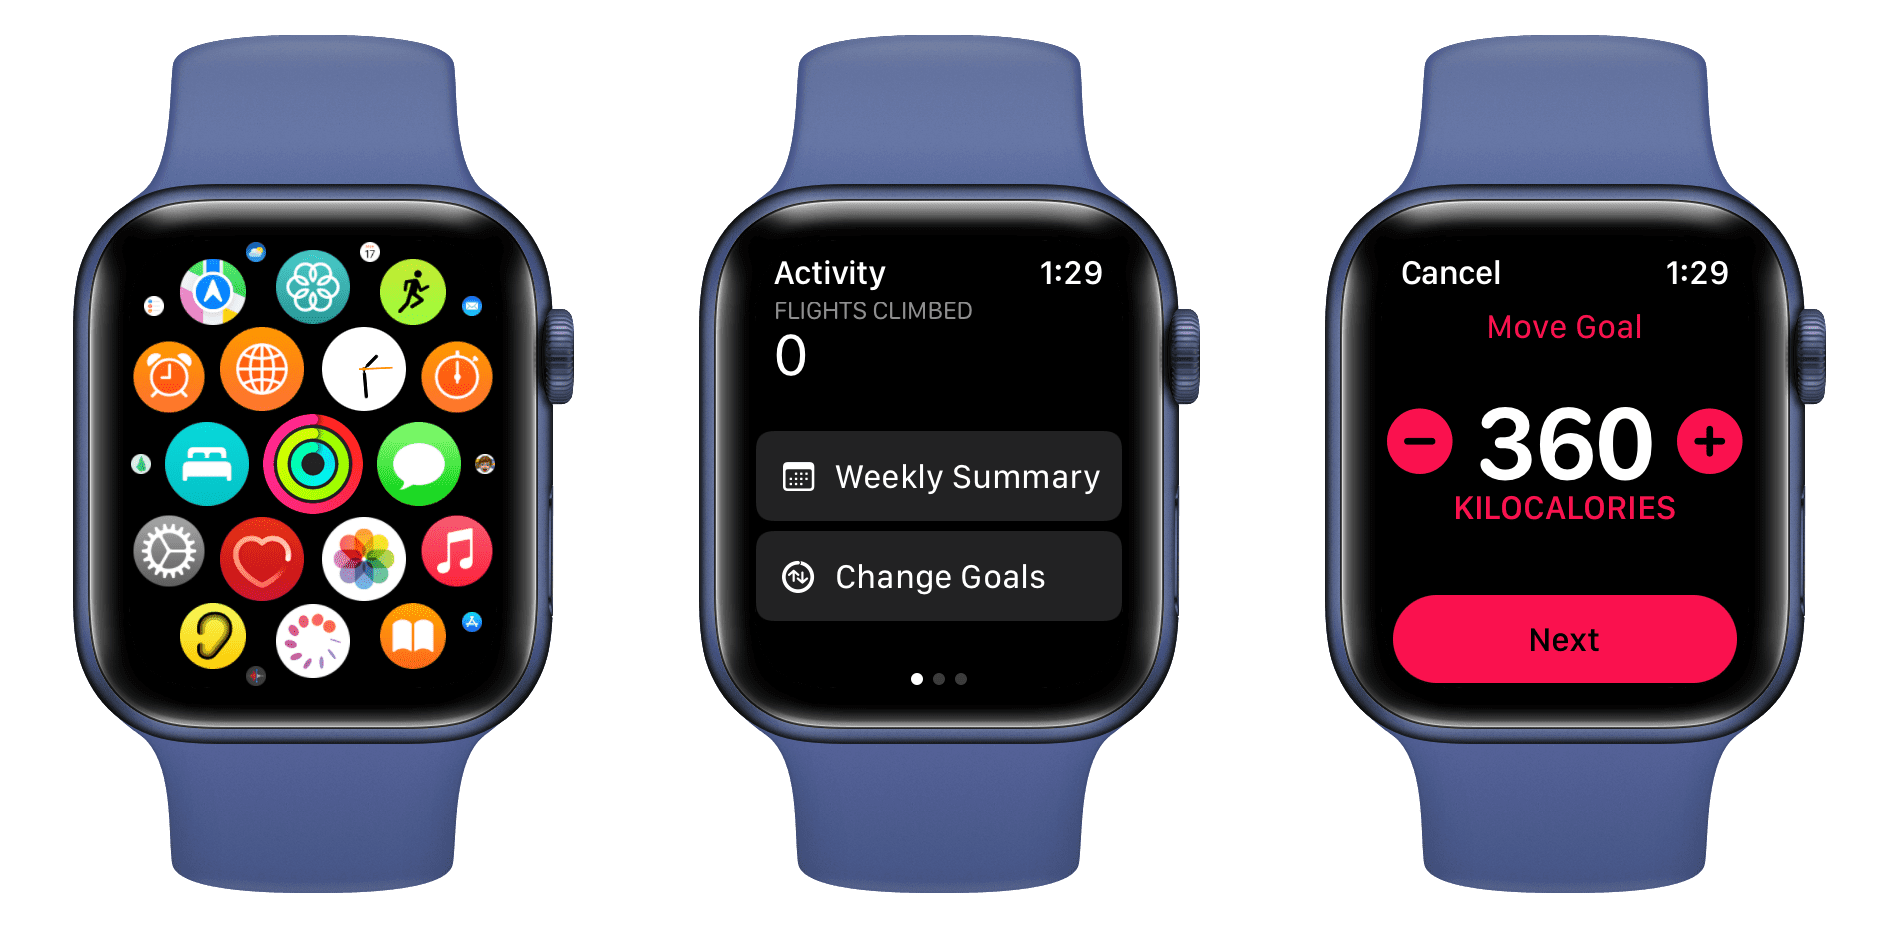 Change Move Goal on Apple Watch